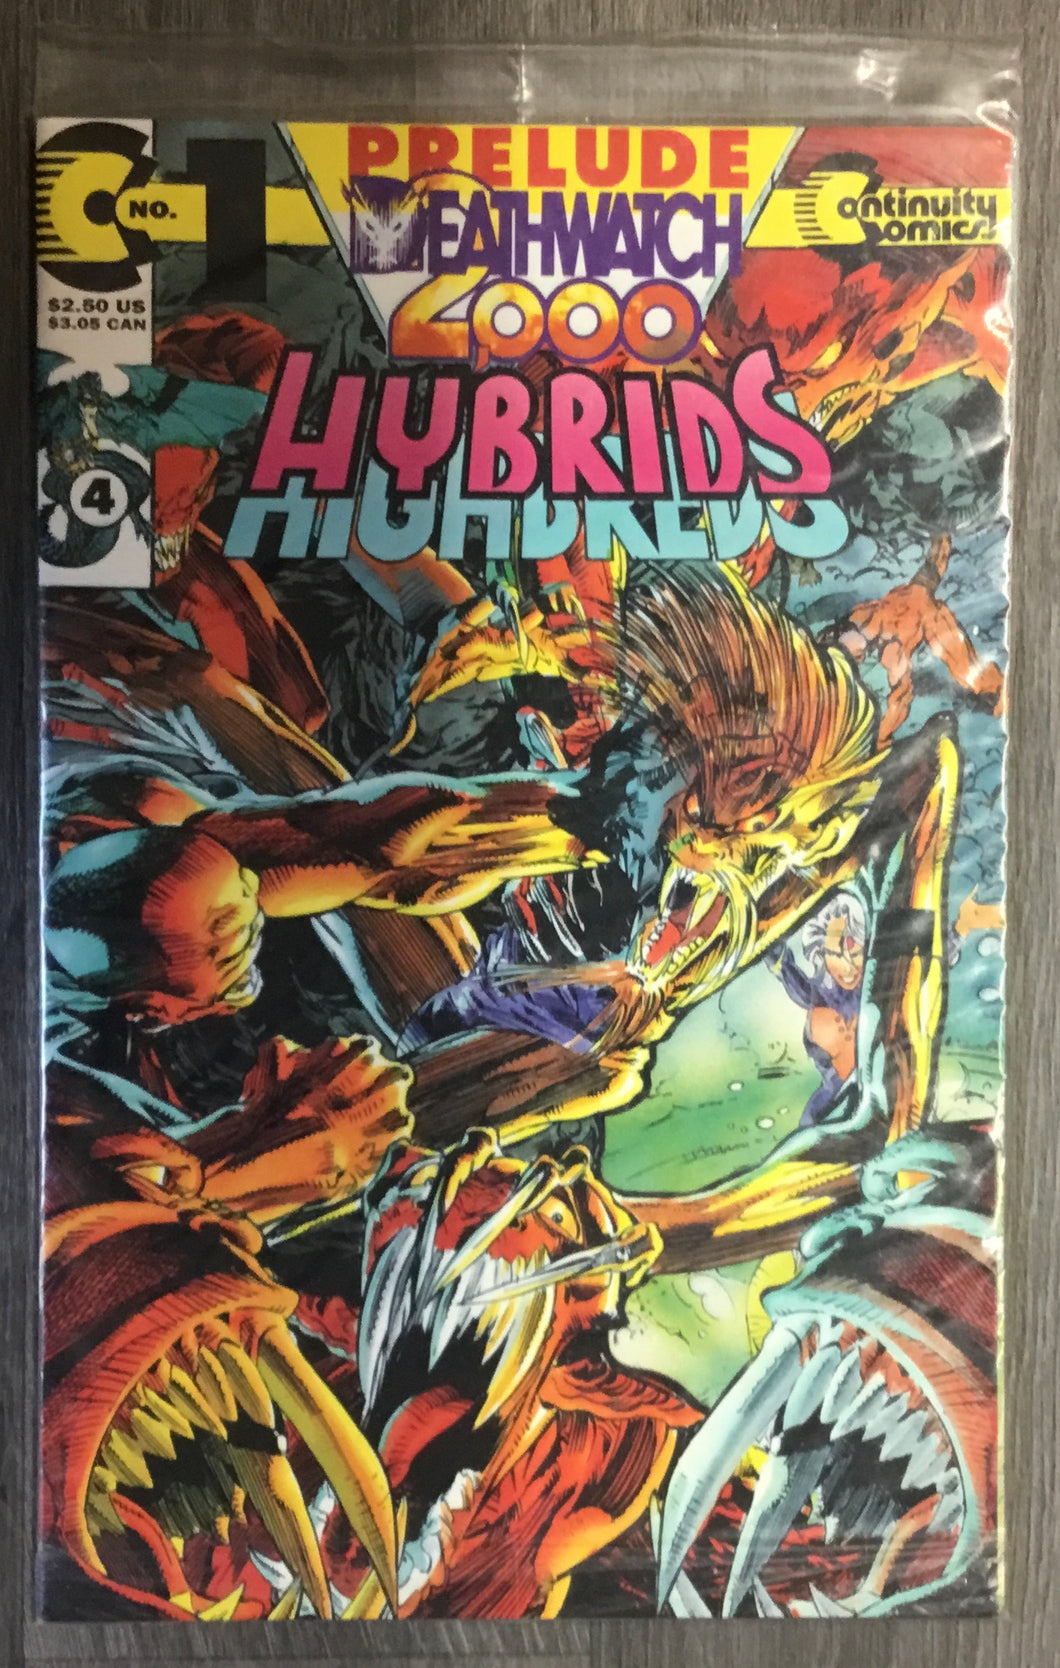 Hybrids No. #4 1993 Continuity Comics